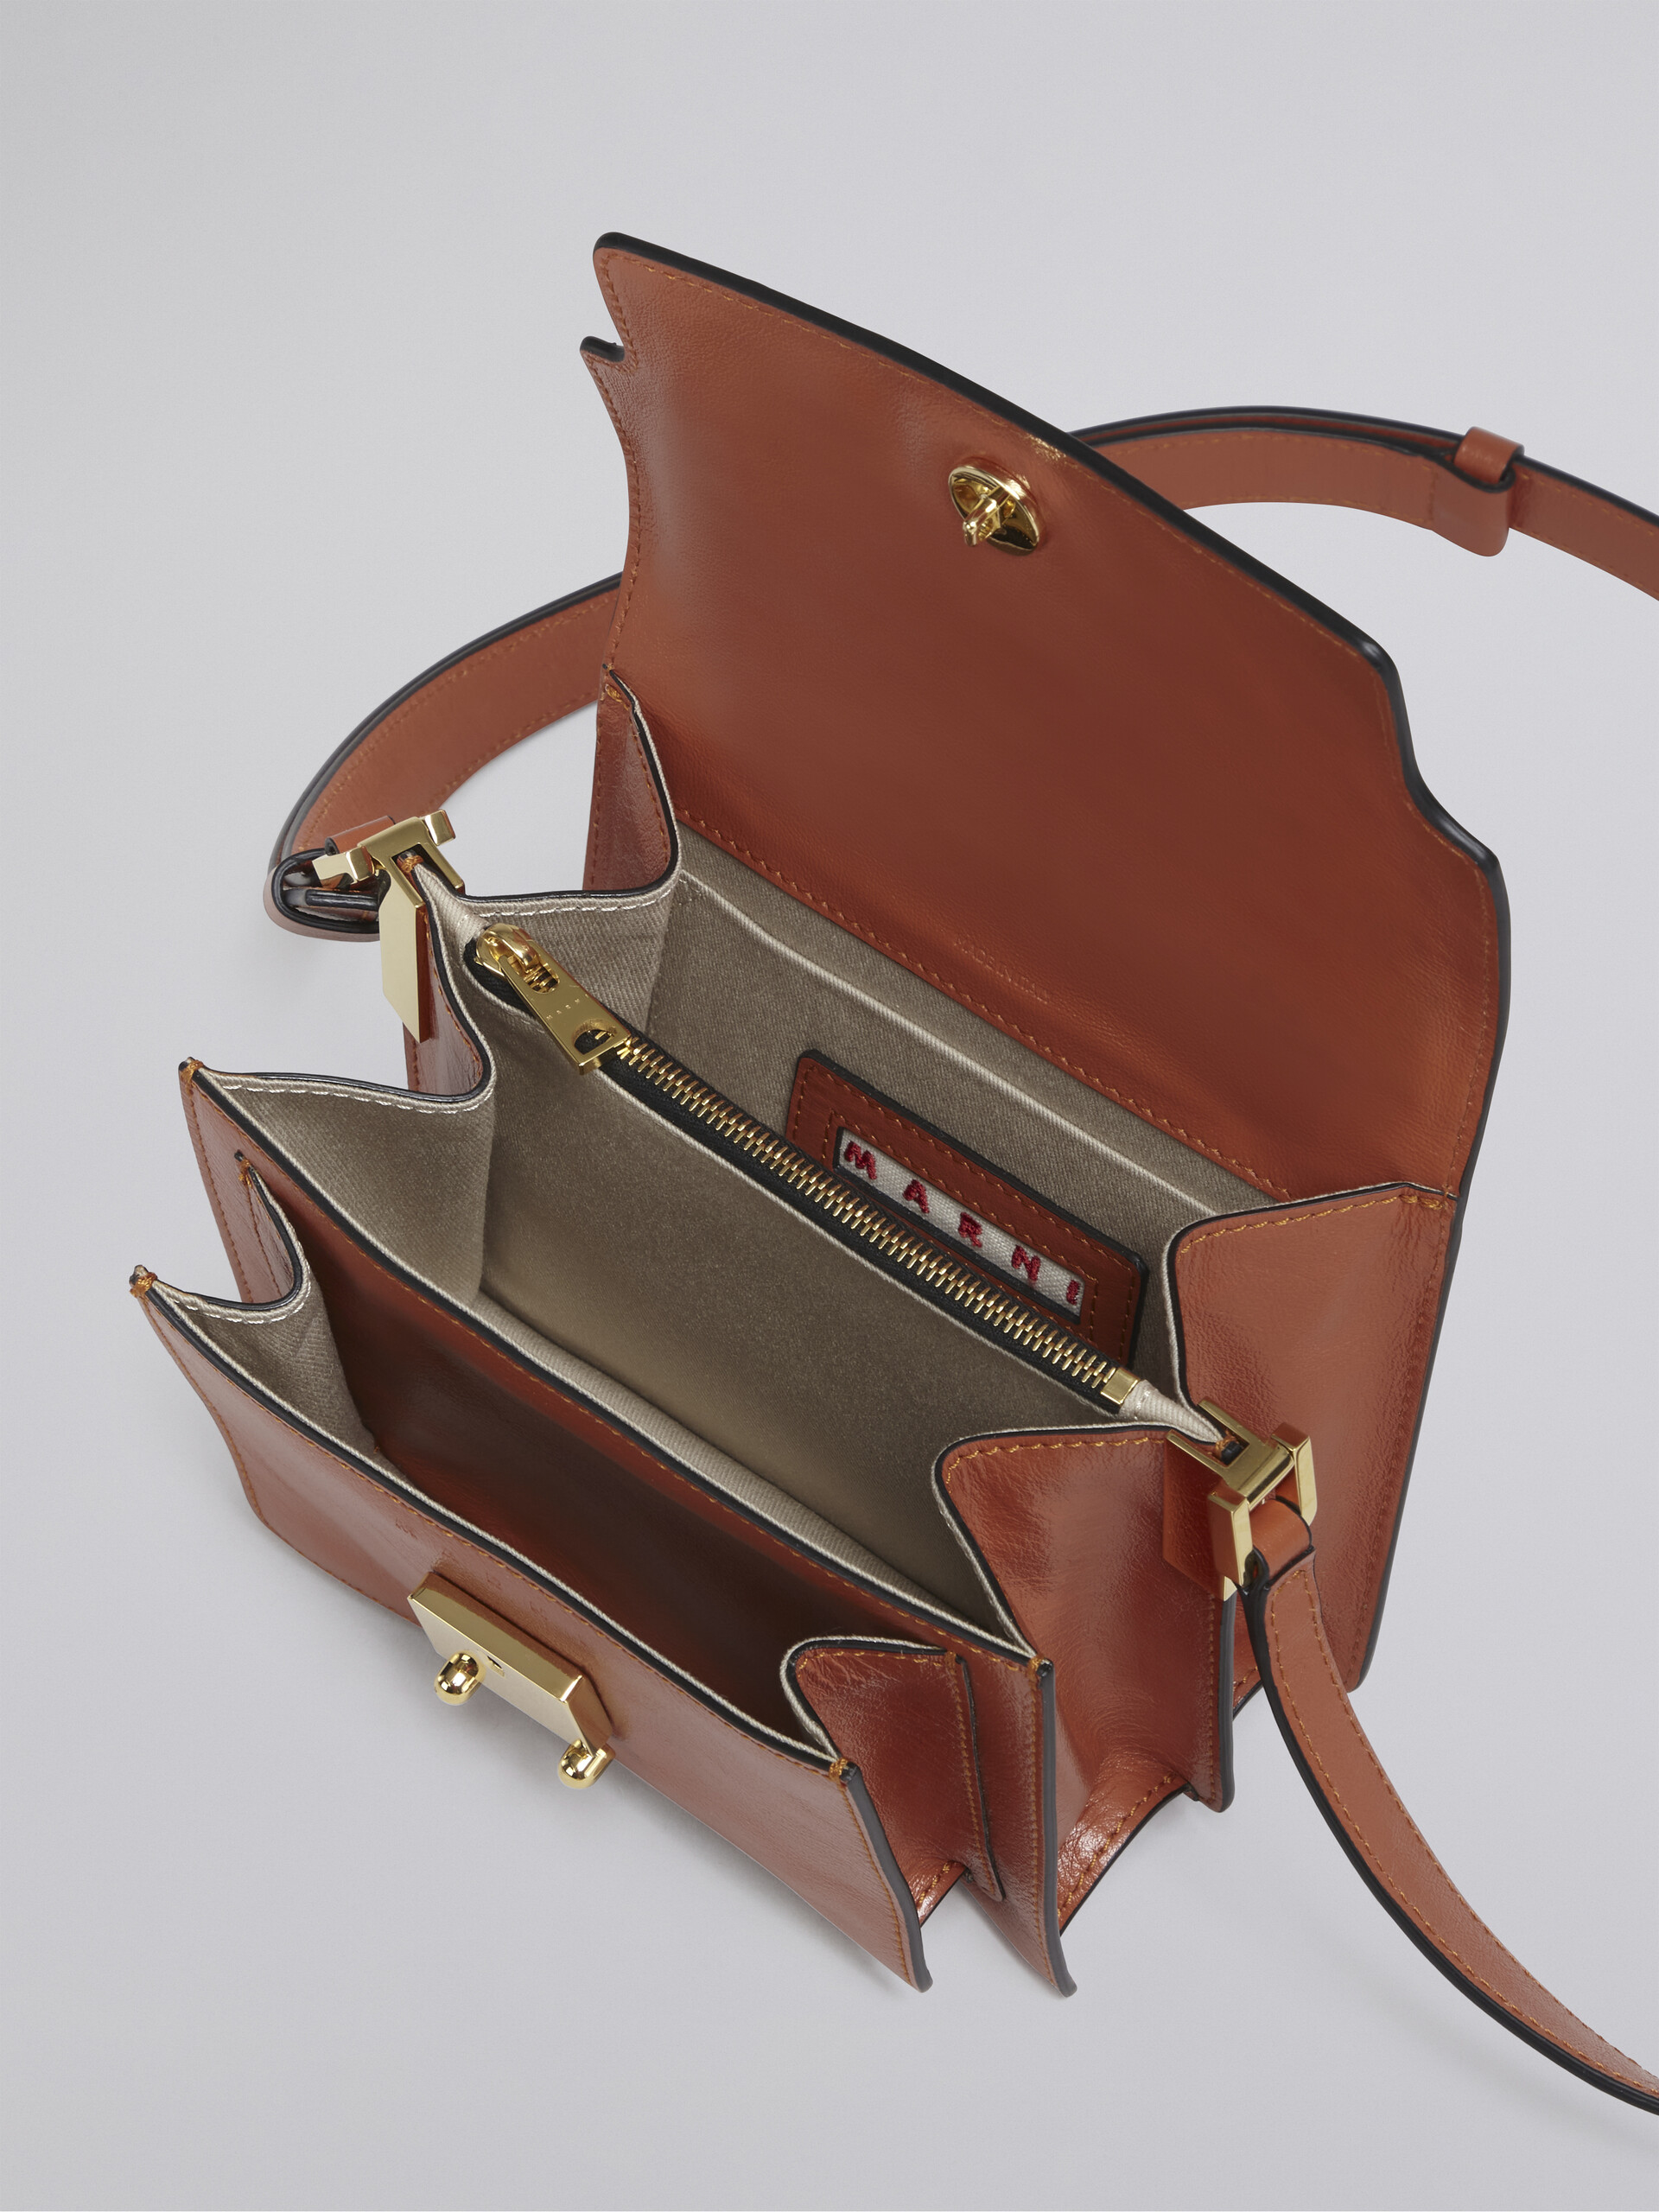 TRUNK SOFT bag mini in pelle marrone - Borse a spalla - Image 4